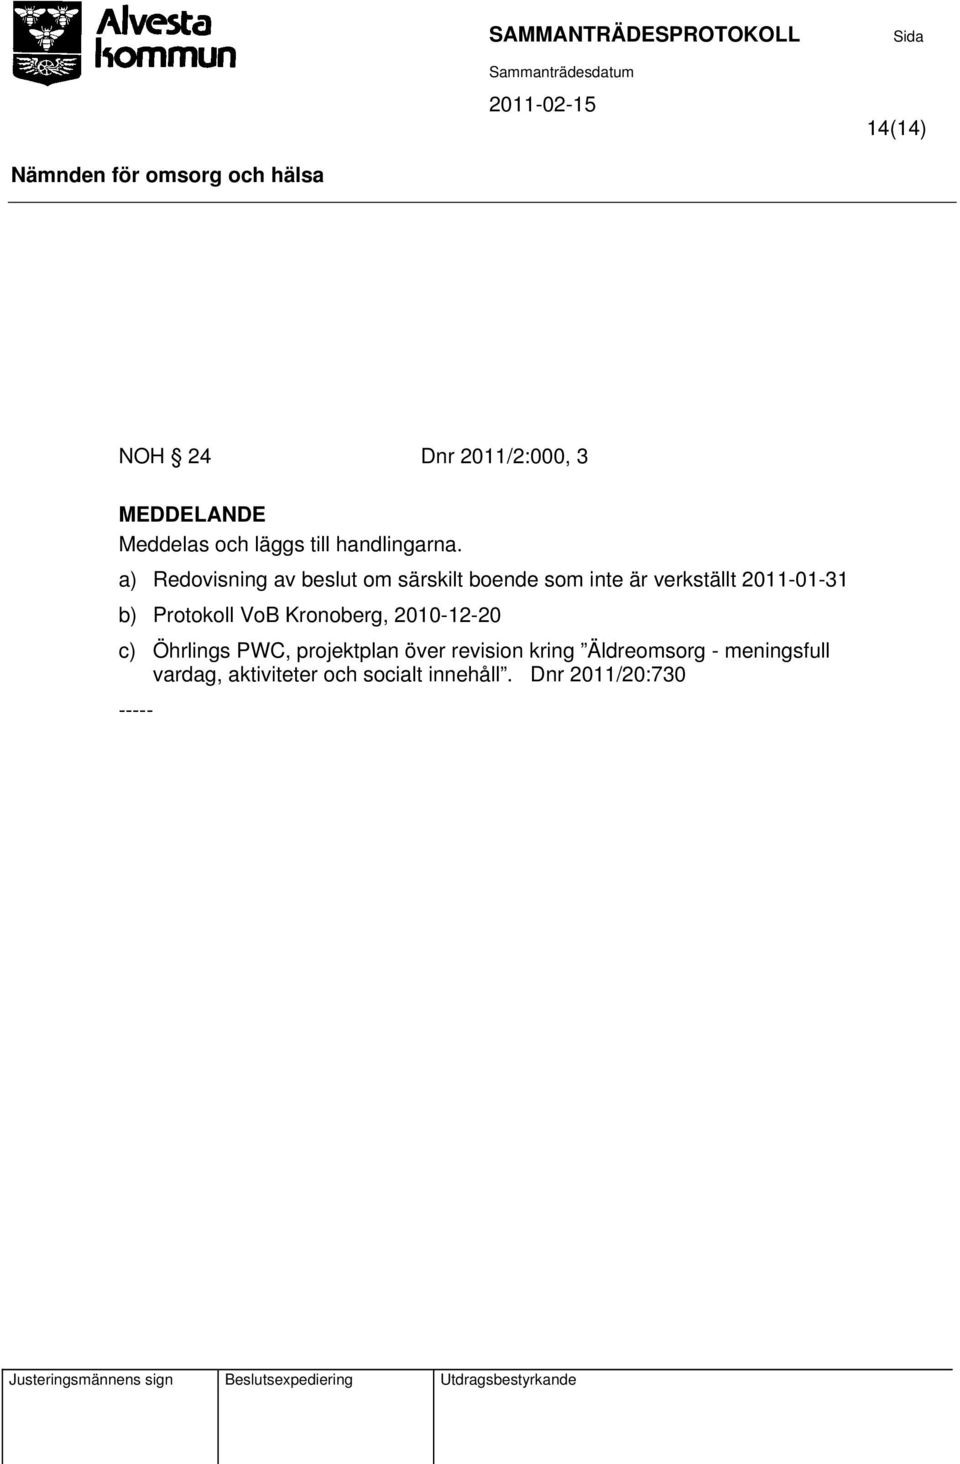 Protokoll VoB Kronoberg, 2010-12-20 c) Öhrlings PWC, projektplan över revision